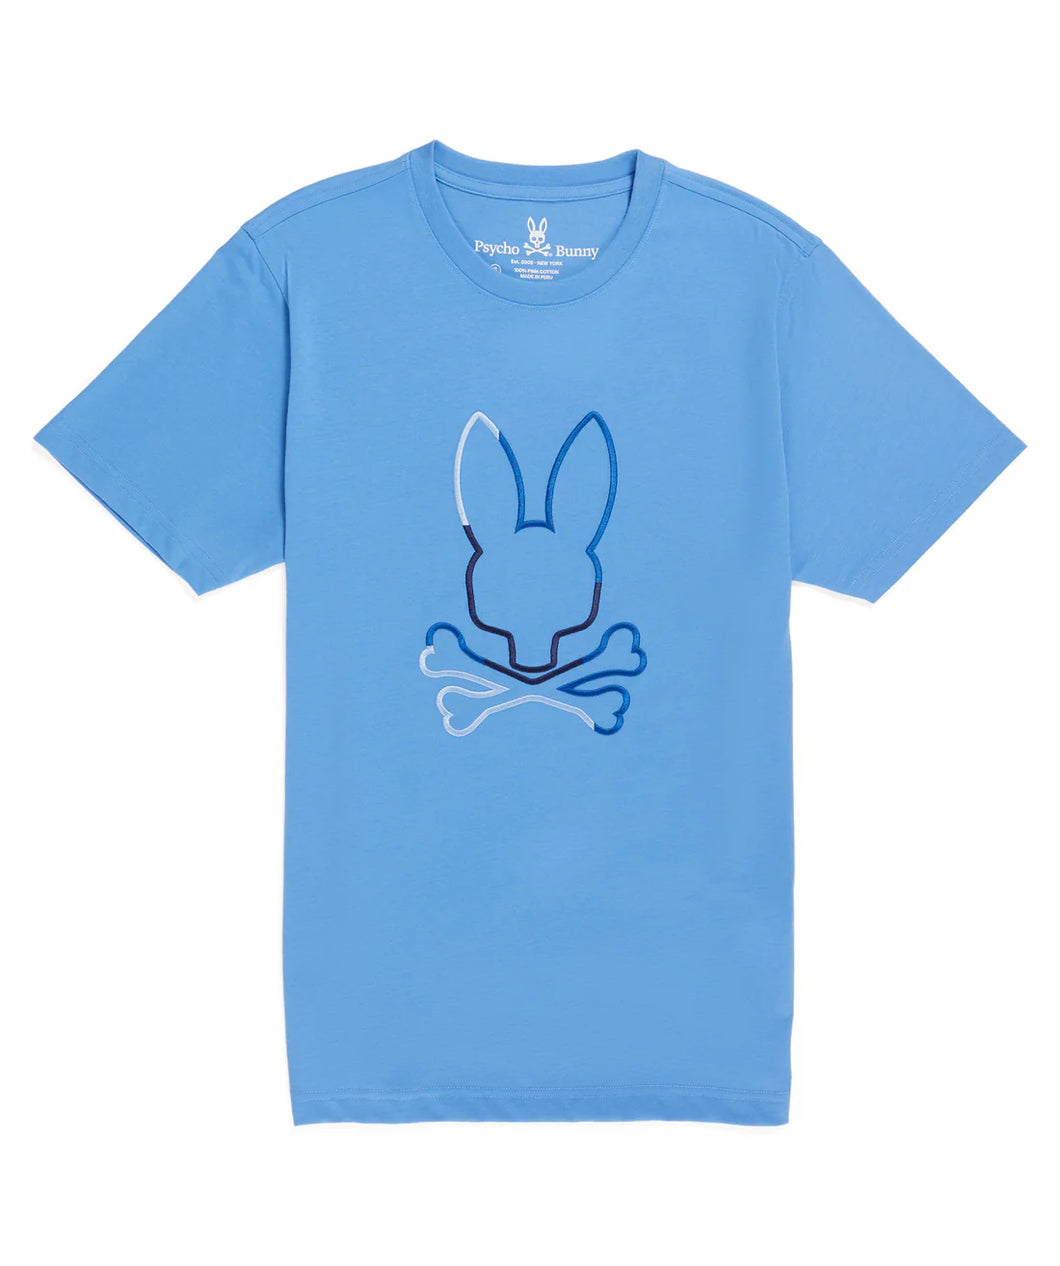 Camiseta Psycho Bunny Calle Graphic